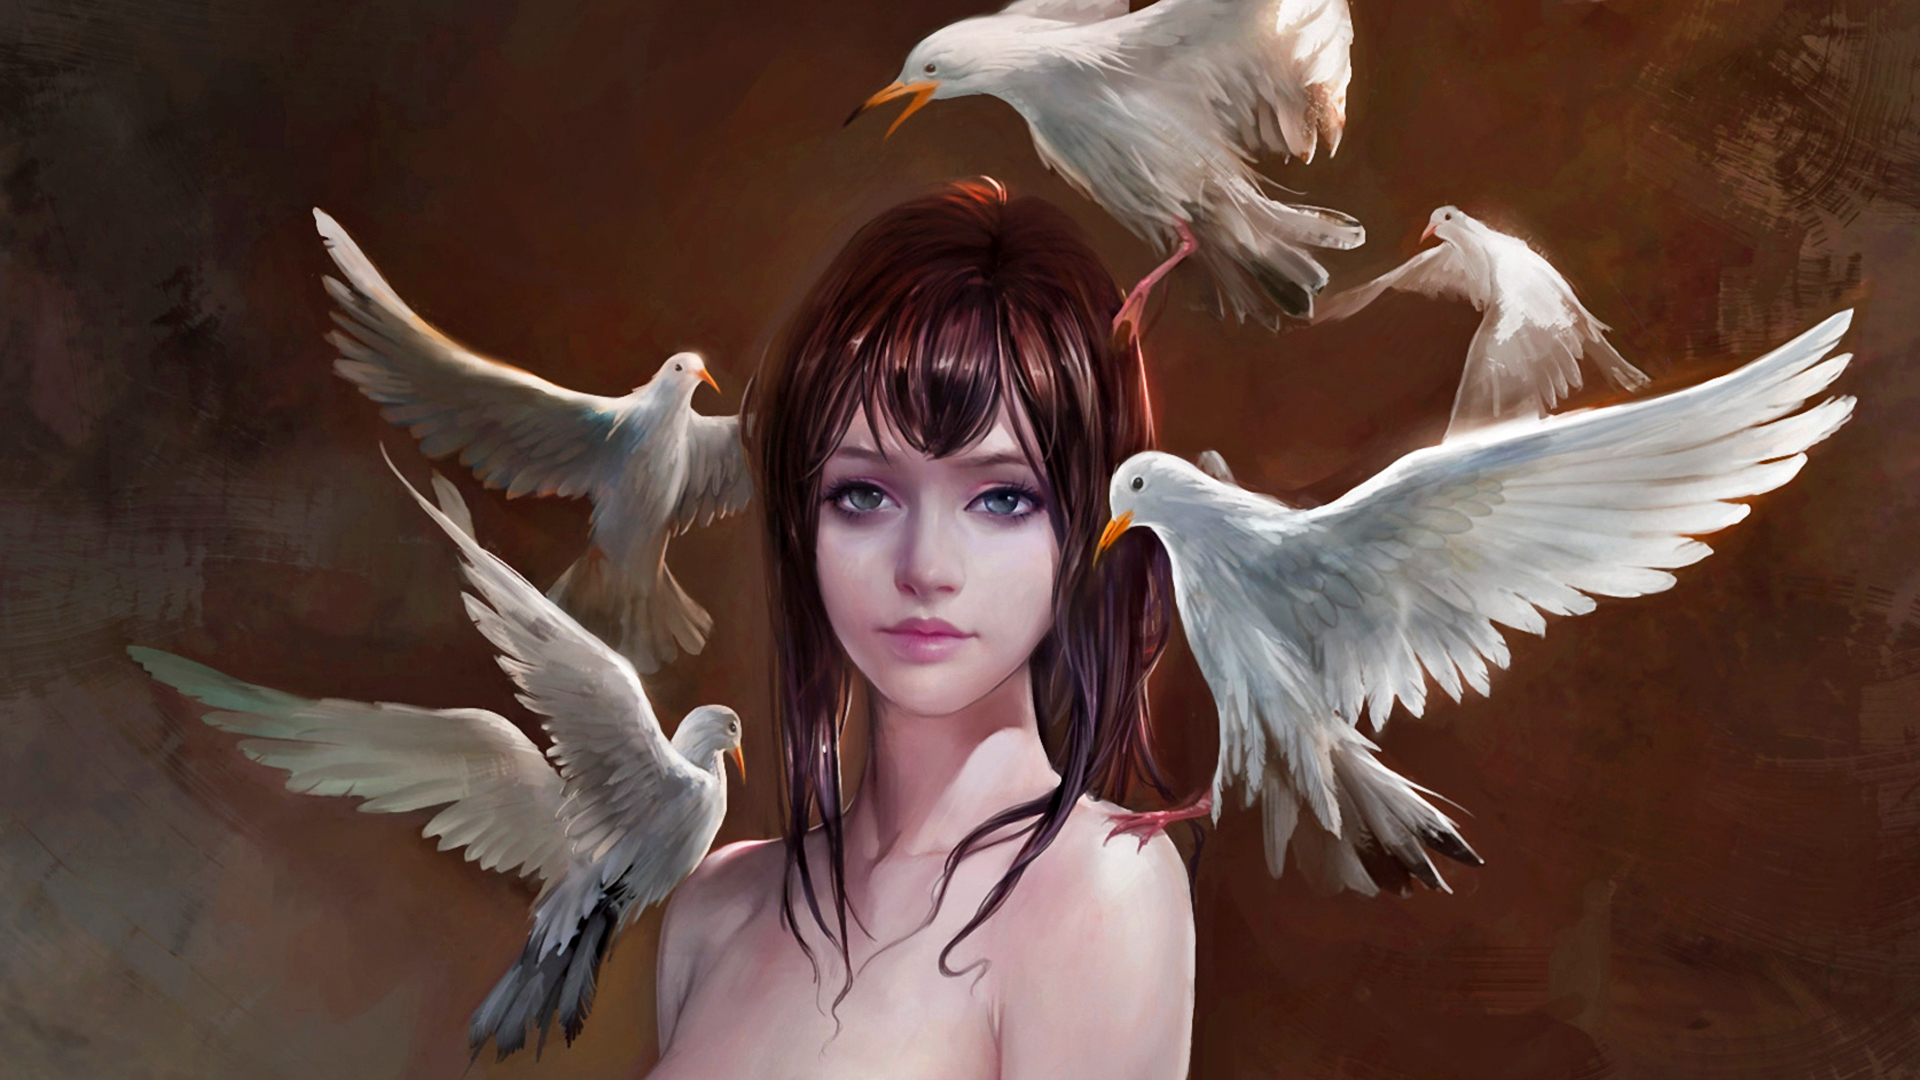 Artistic Bird Brown Hair Dove Fantasy Girl 1920x1080